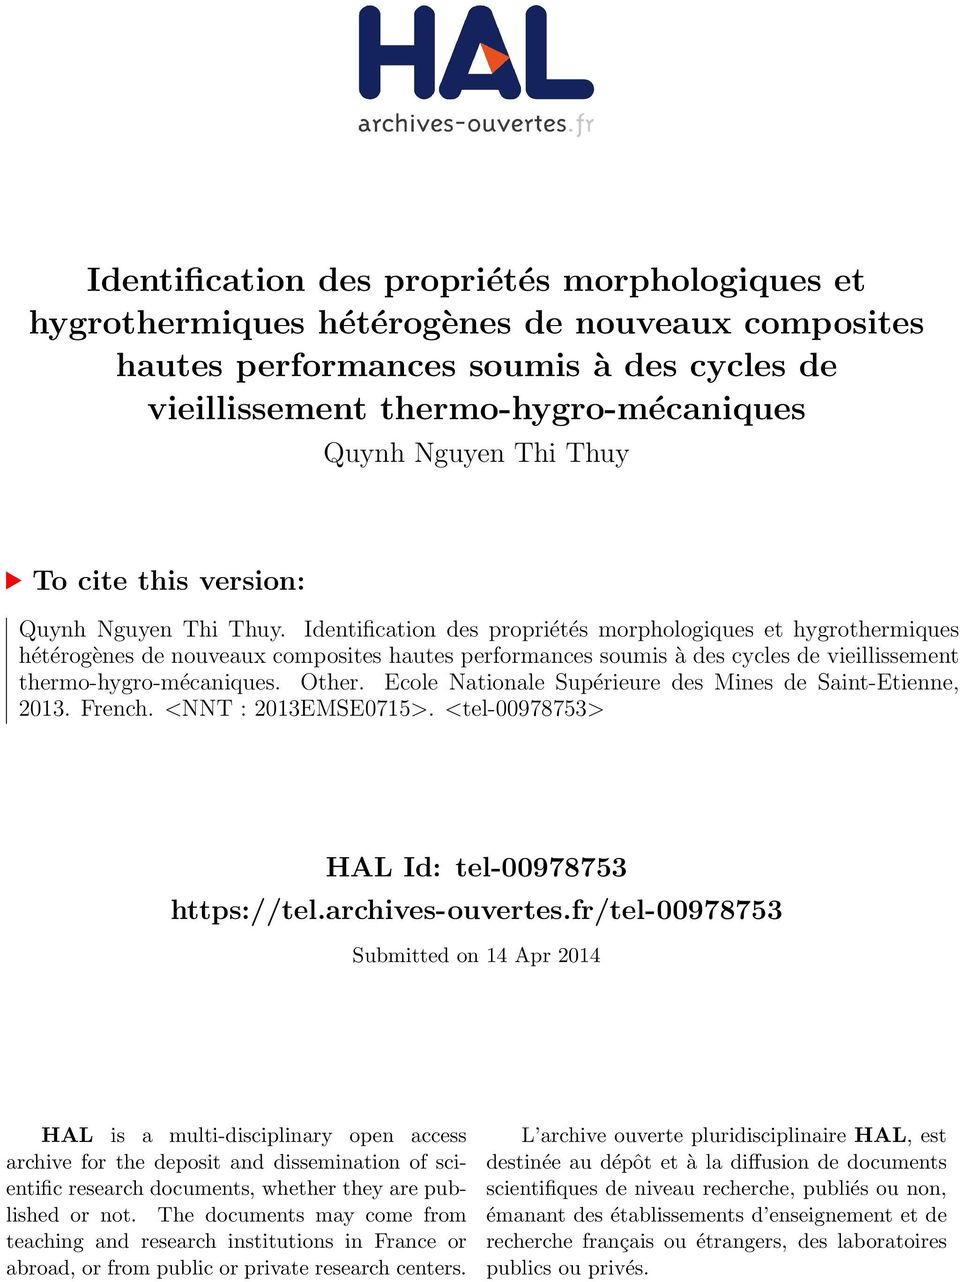 Identification des propriétés morphologiques et hygrothermiques hétérogènes de nouveaux composites hautes performances soumis à des cycles de vieillissement thermo-hygro-mécaniques. Other.